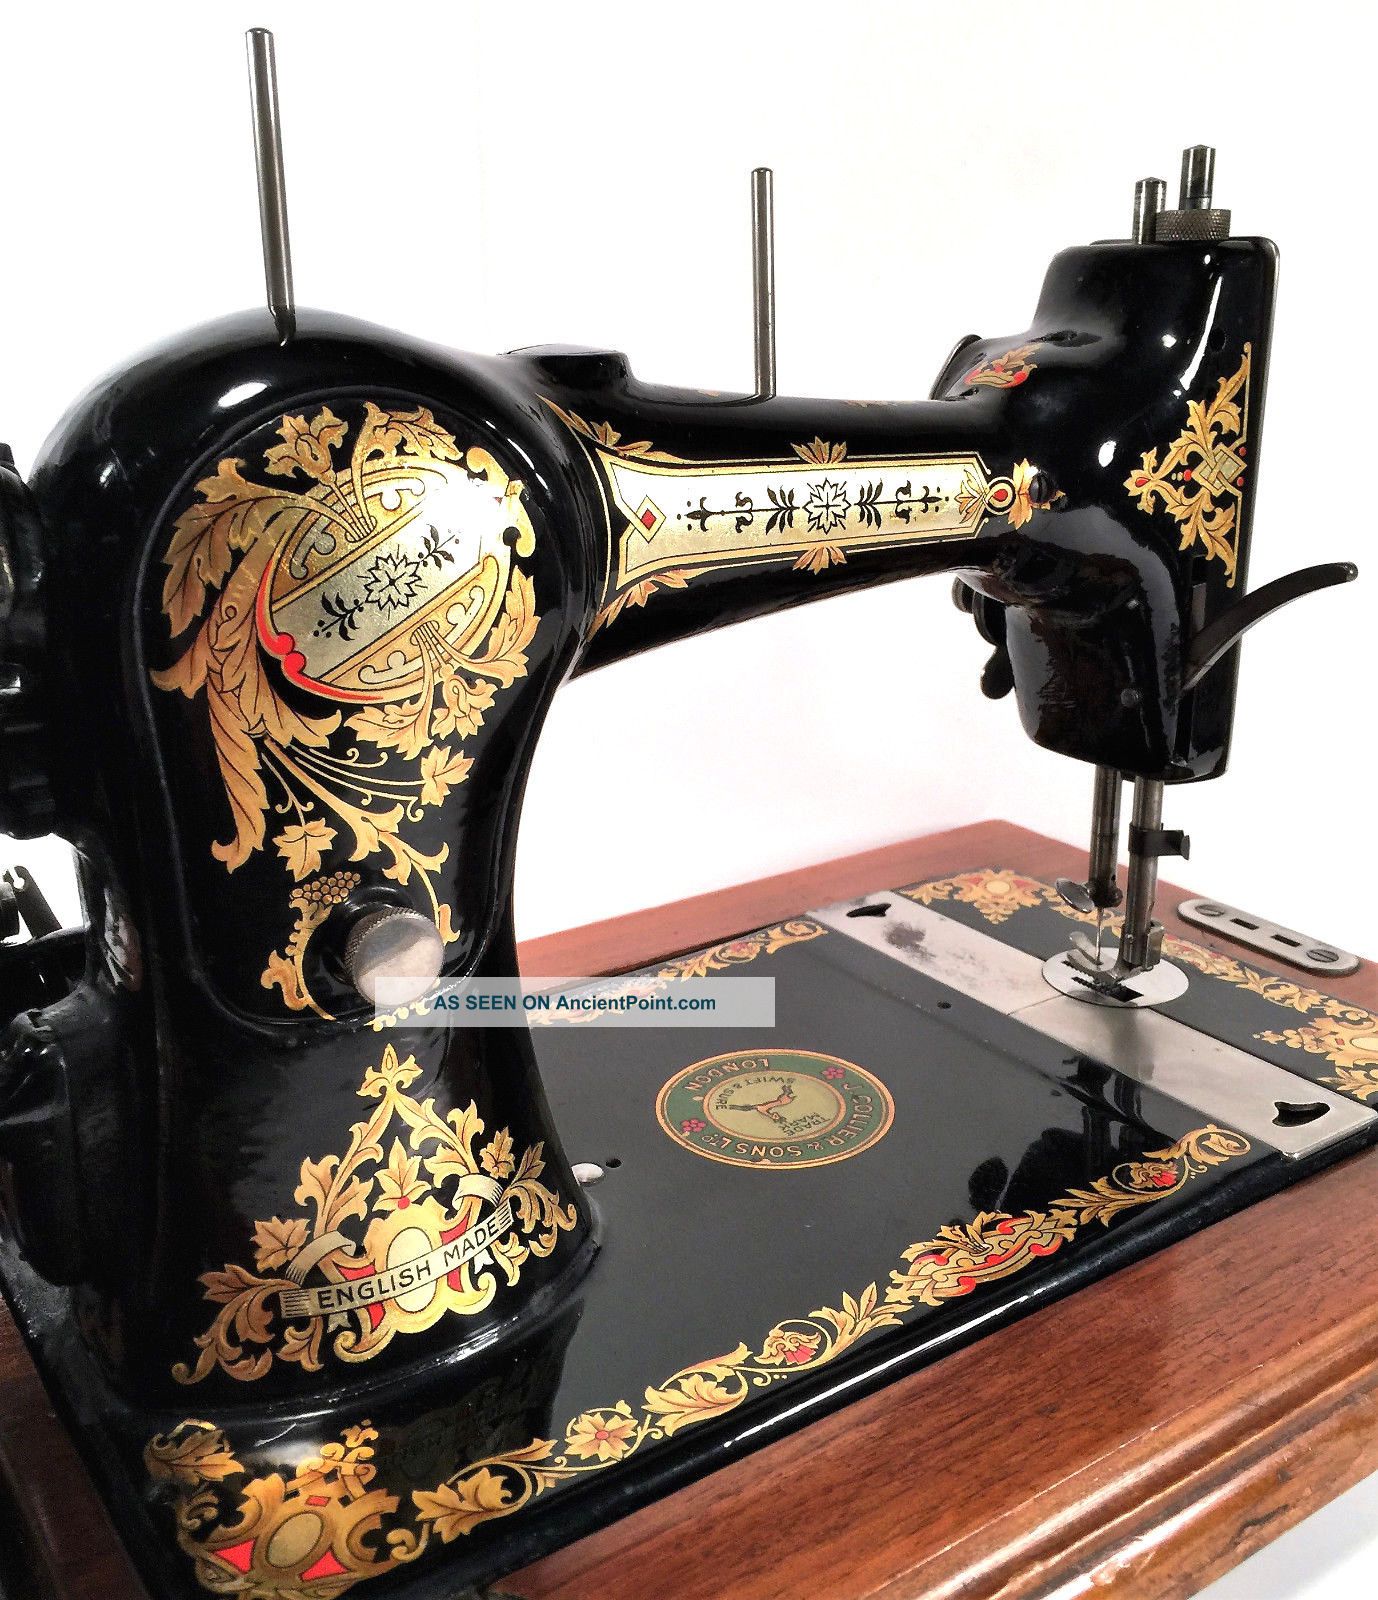 Collier No 4 Jones Hand Crank Sewing Machine W Coffin Case Gold Decals Sewing Machines photo